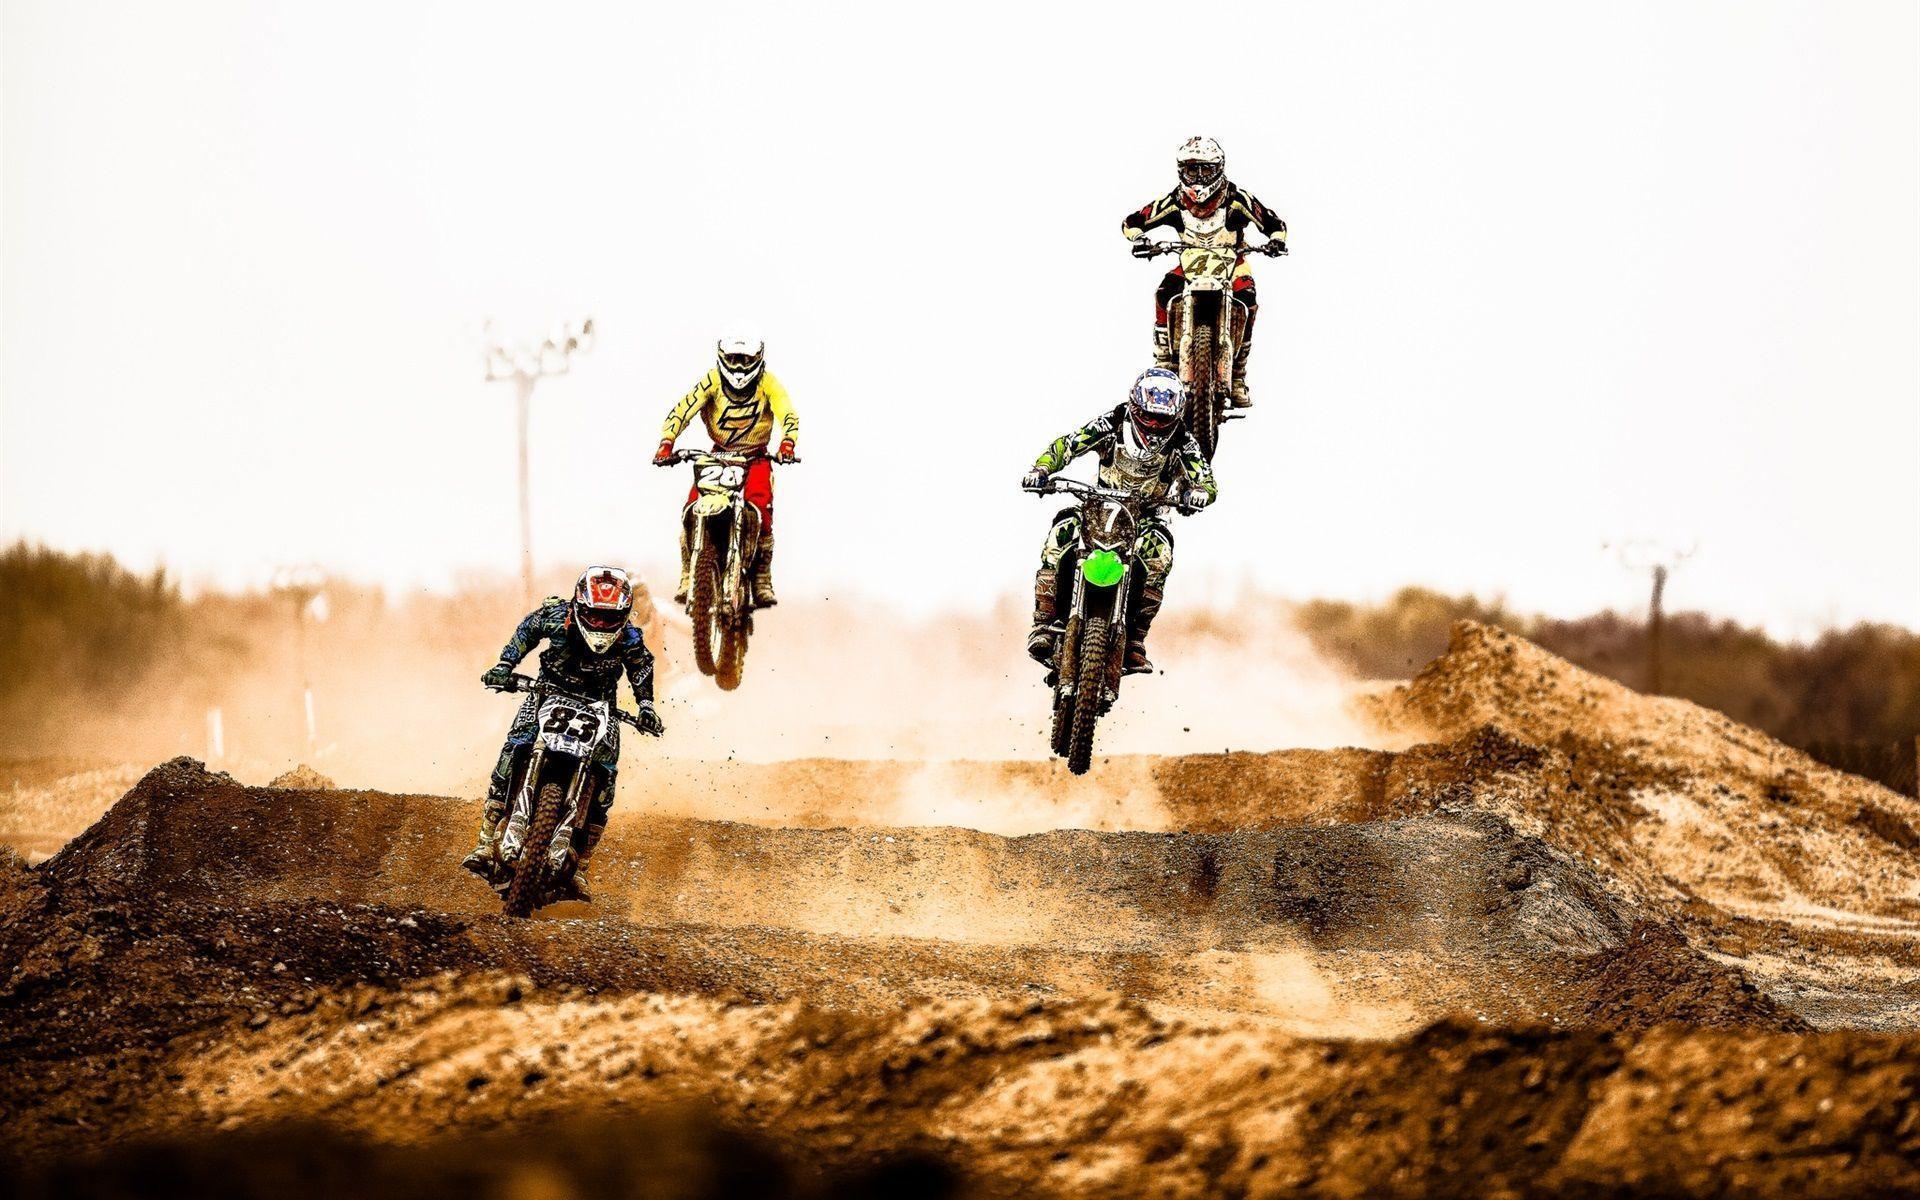 Motocross race, jump, dust, desert wallpaper, Motocross HD